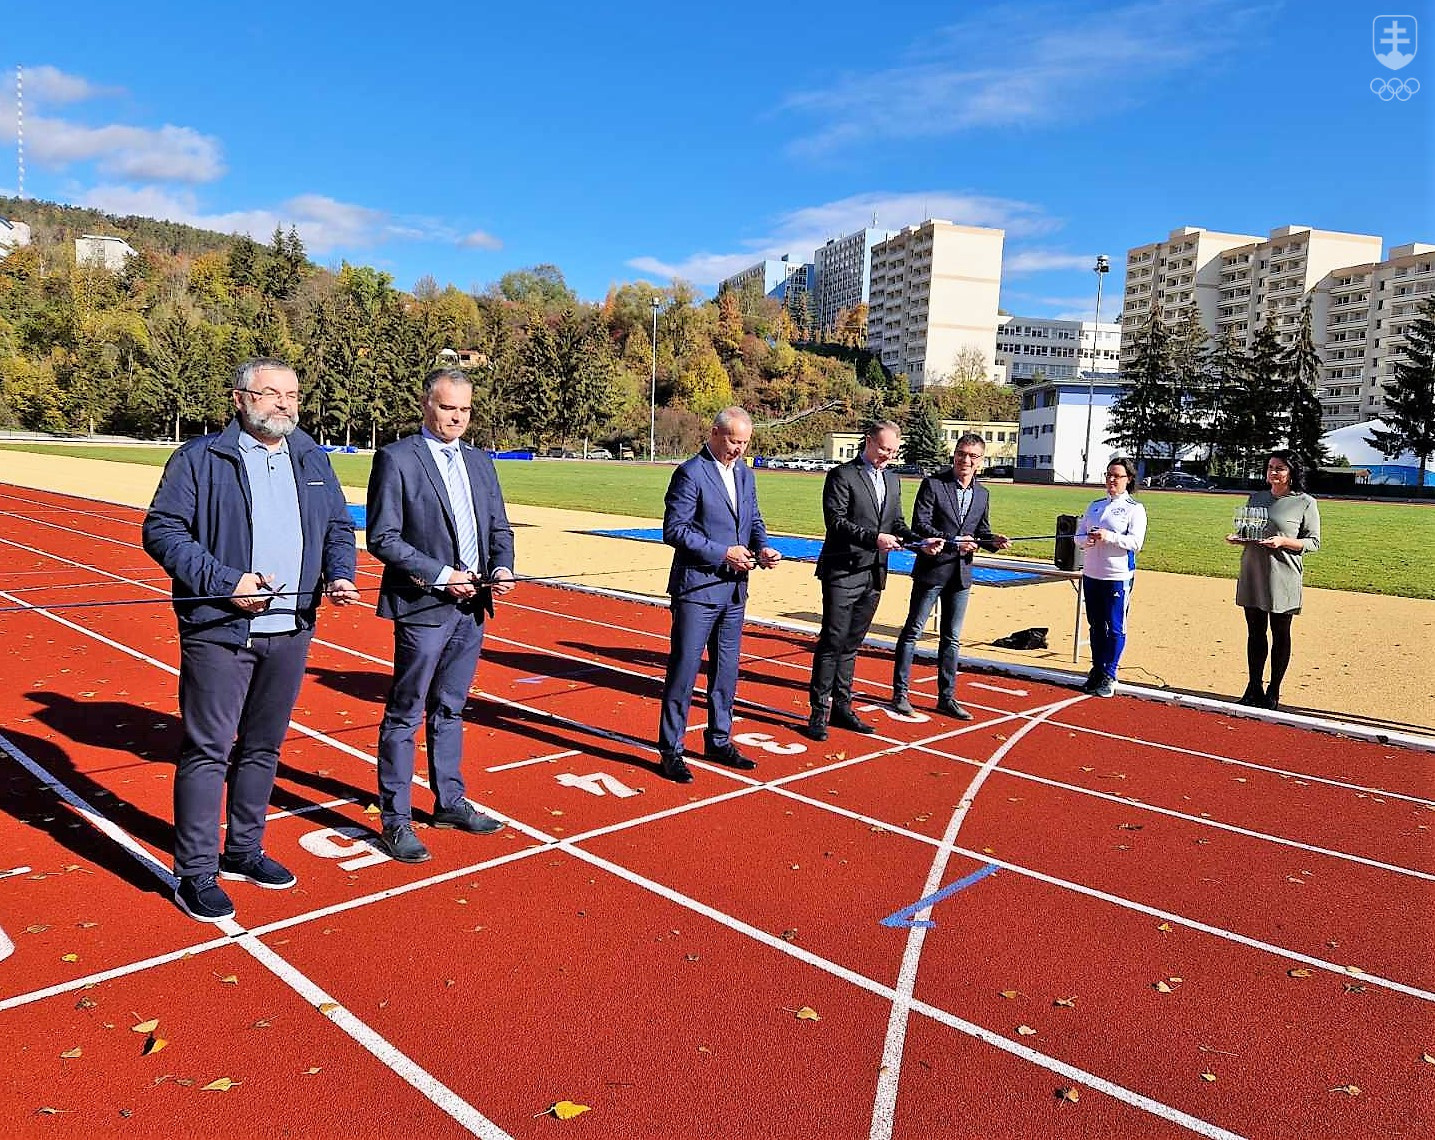 Symbolické strihanie pásky na novom štadióne pre atletiku v Banskej Bystrici.